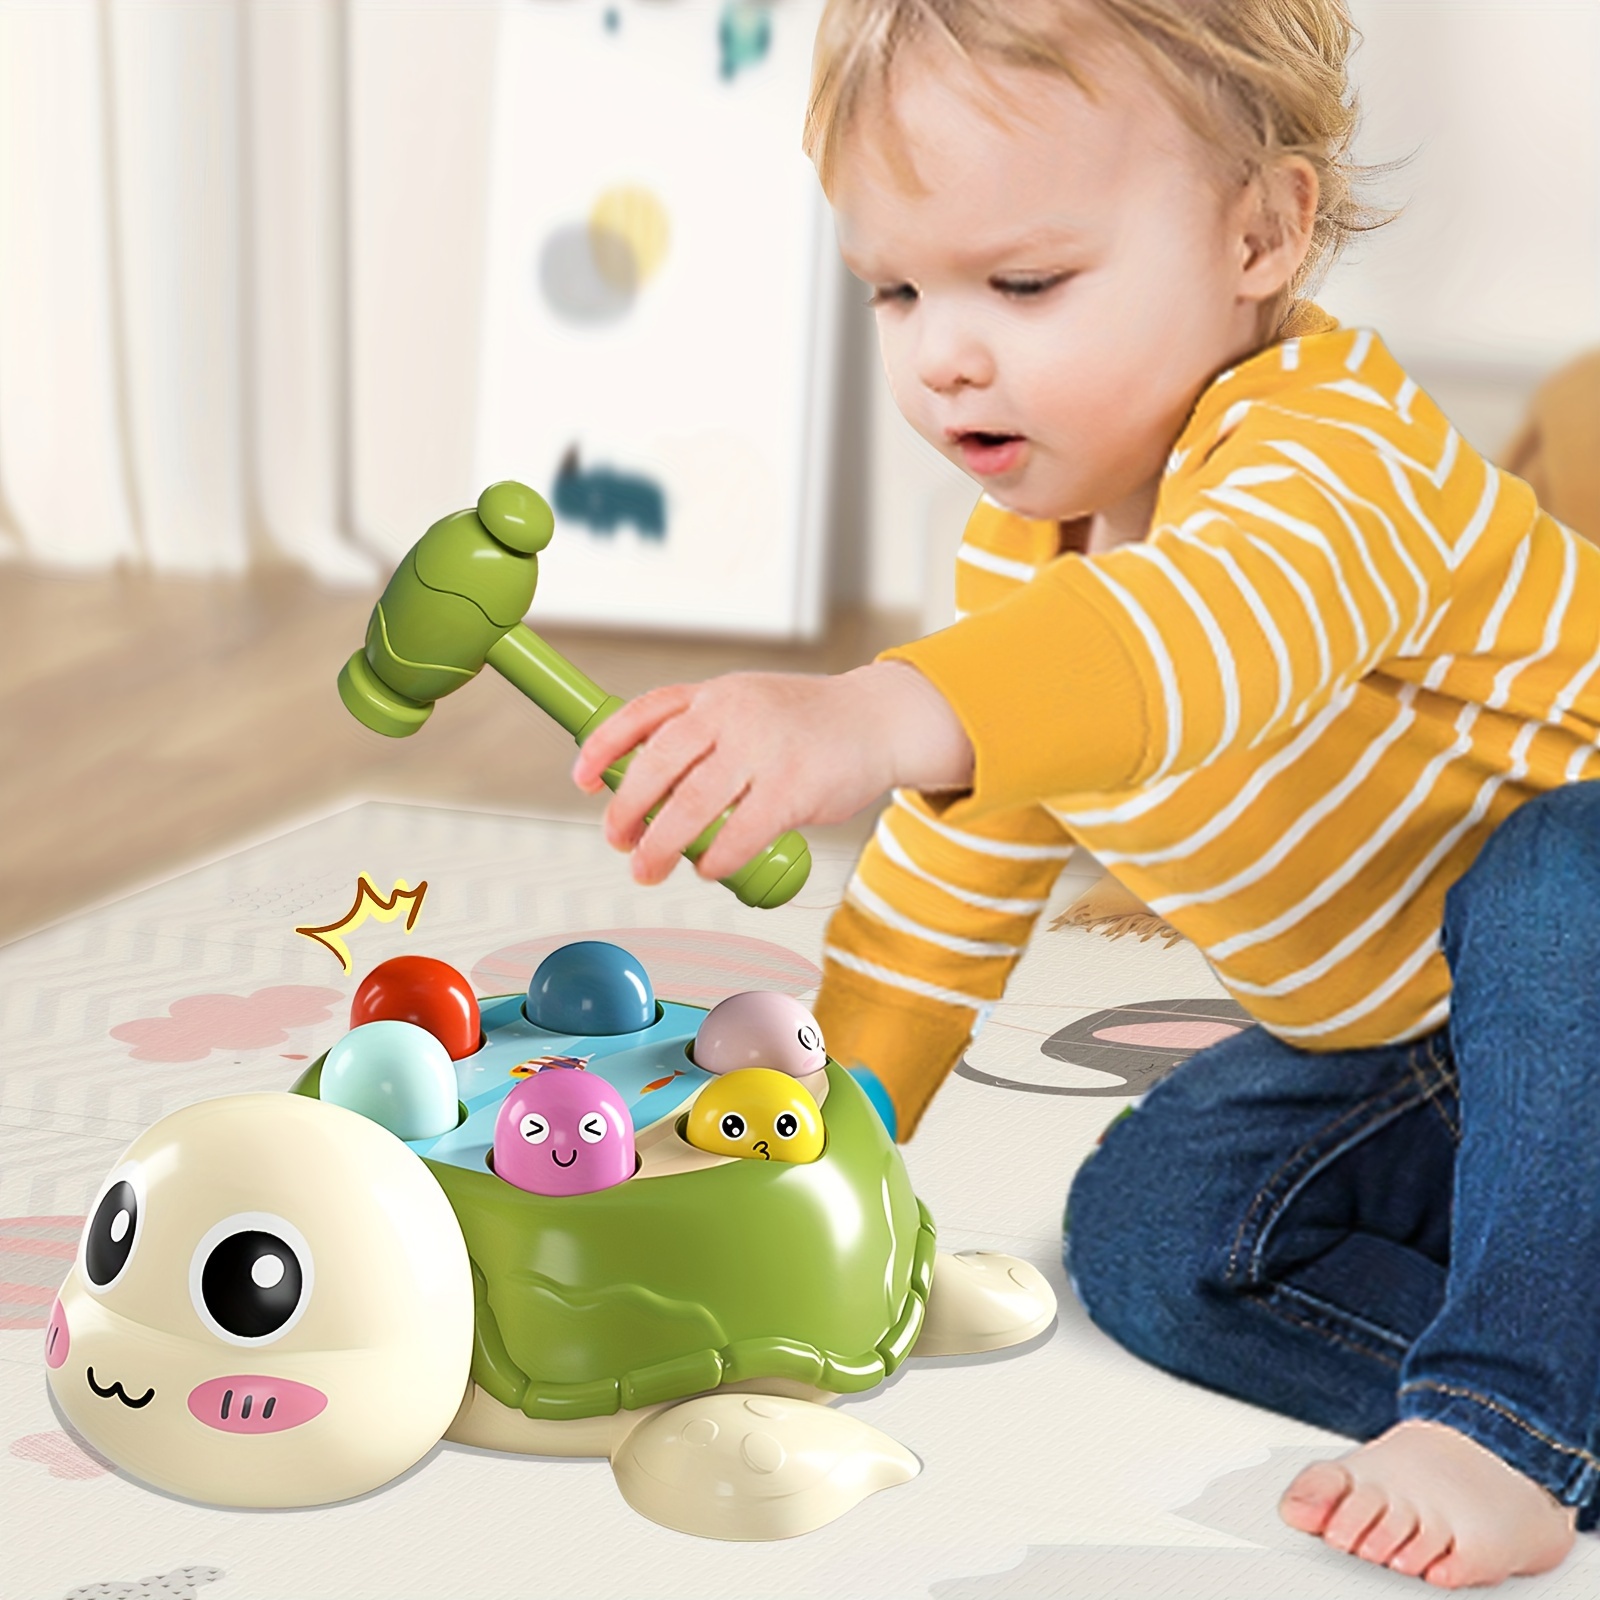 Juego Whack A Mole, juguetes para niños y niñas de 3, 4, 5, 6 años o más,  juguetes educativos interactivos para niños pequeños con 2 martillos,  música